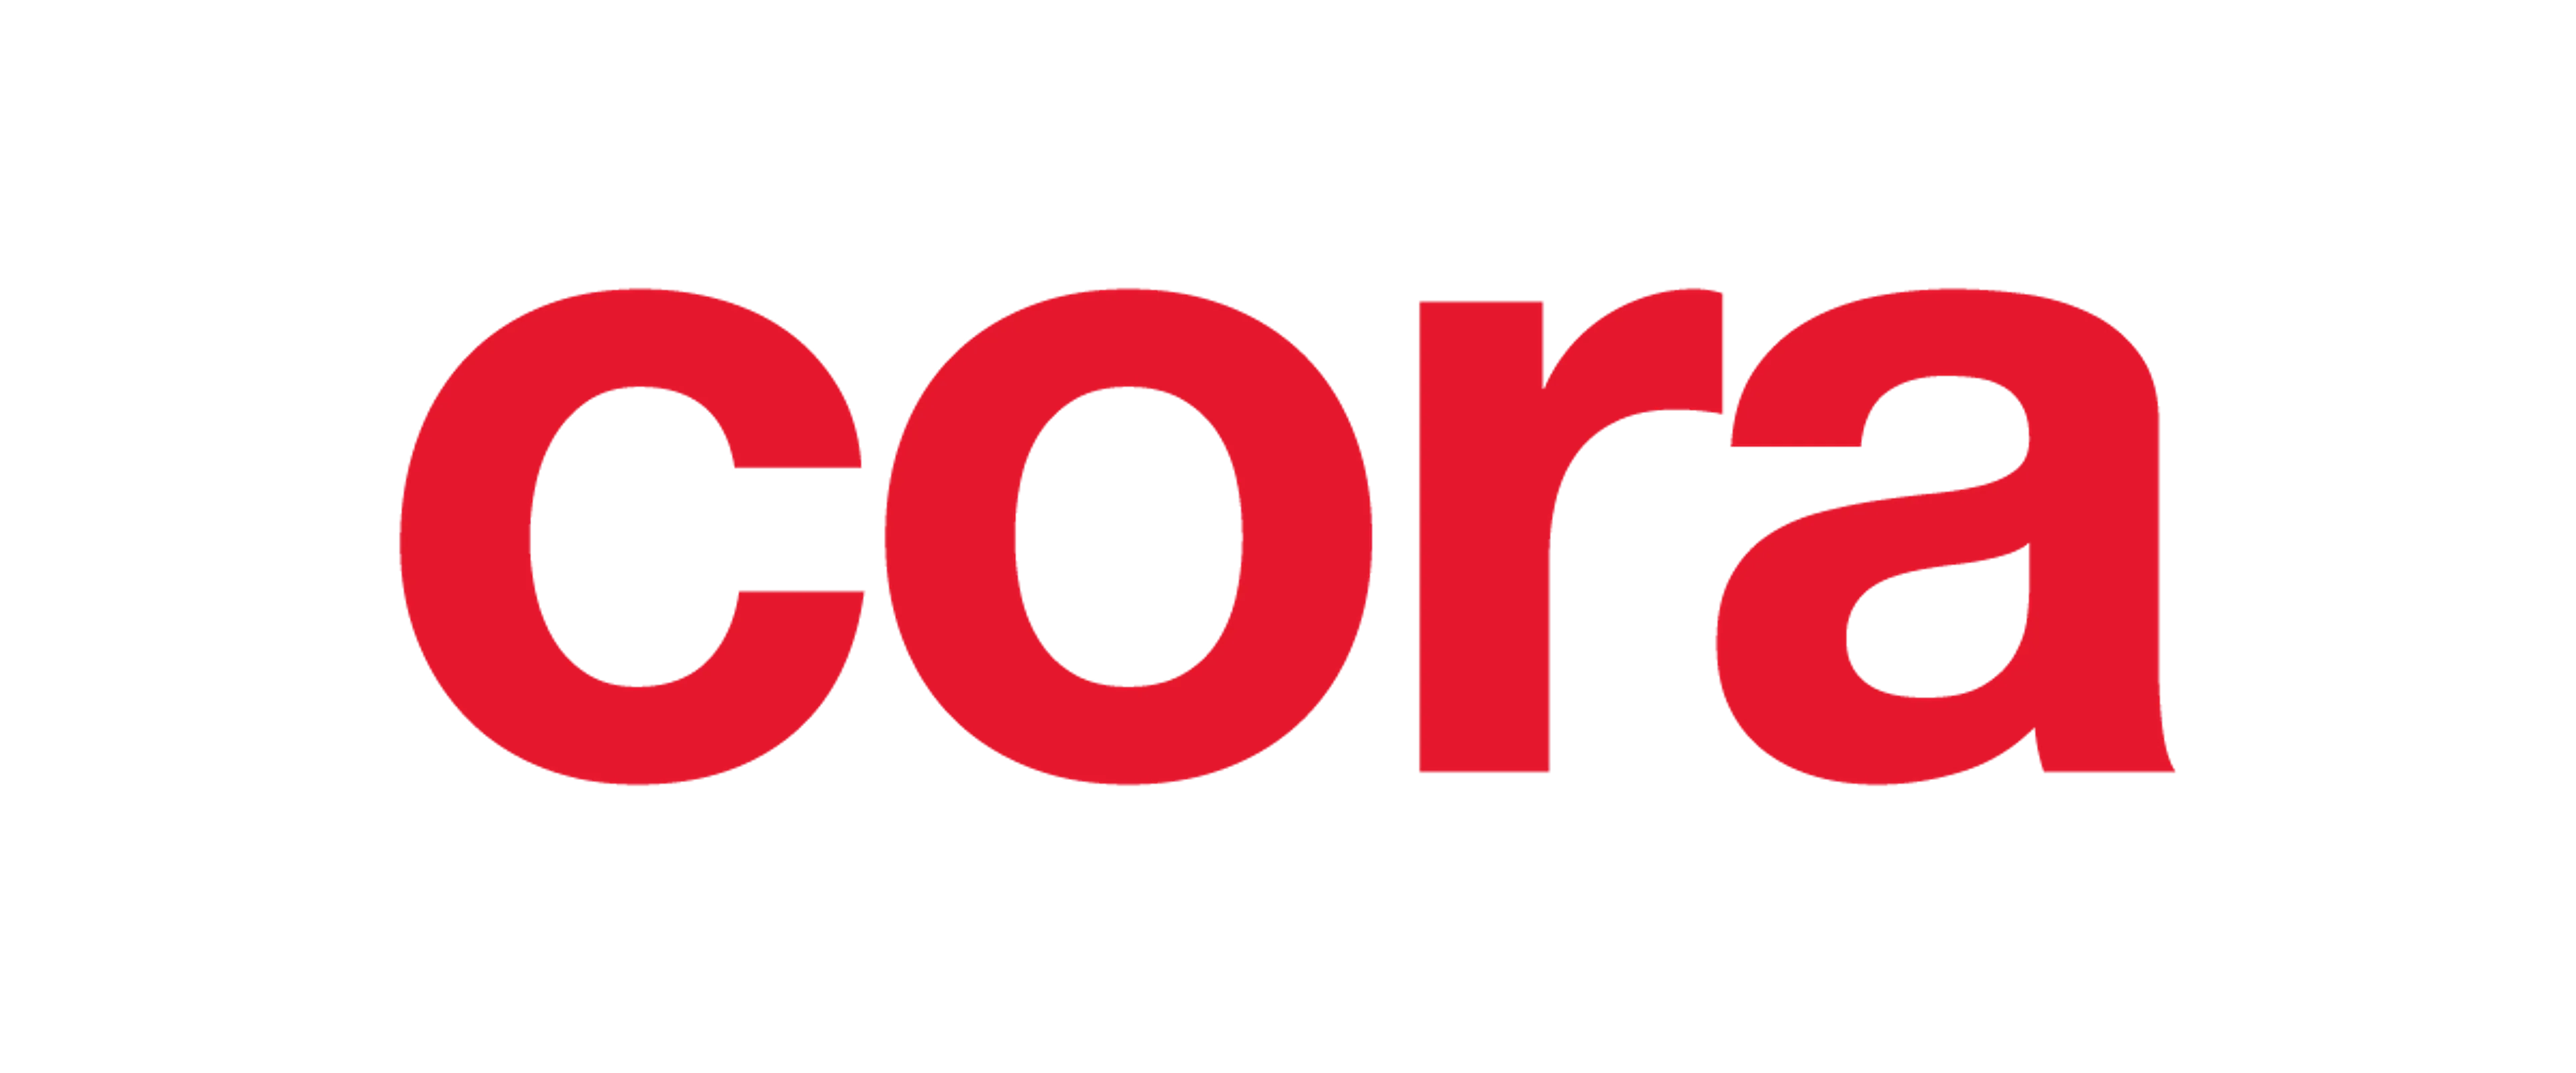 CORA logo